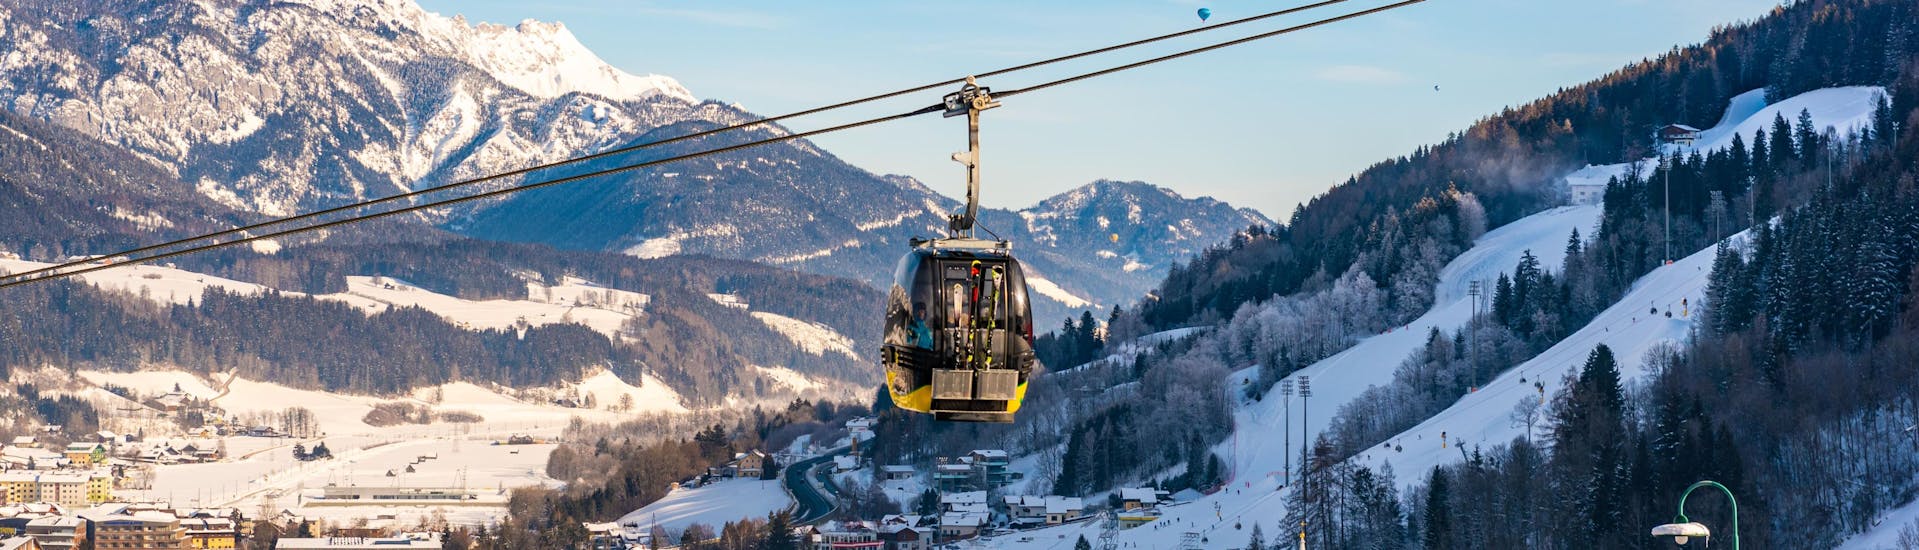 Eine Gondel in der Region Ski Amadé Schladming Dachstein, einem beliebten Skigebiet, in dem Skischulen in der Steiermark ihre Skikurse anbieten.